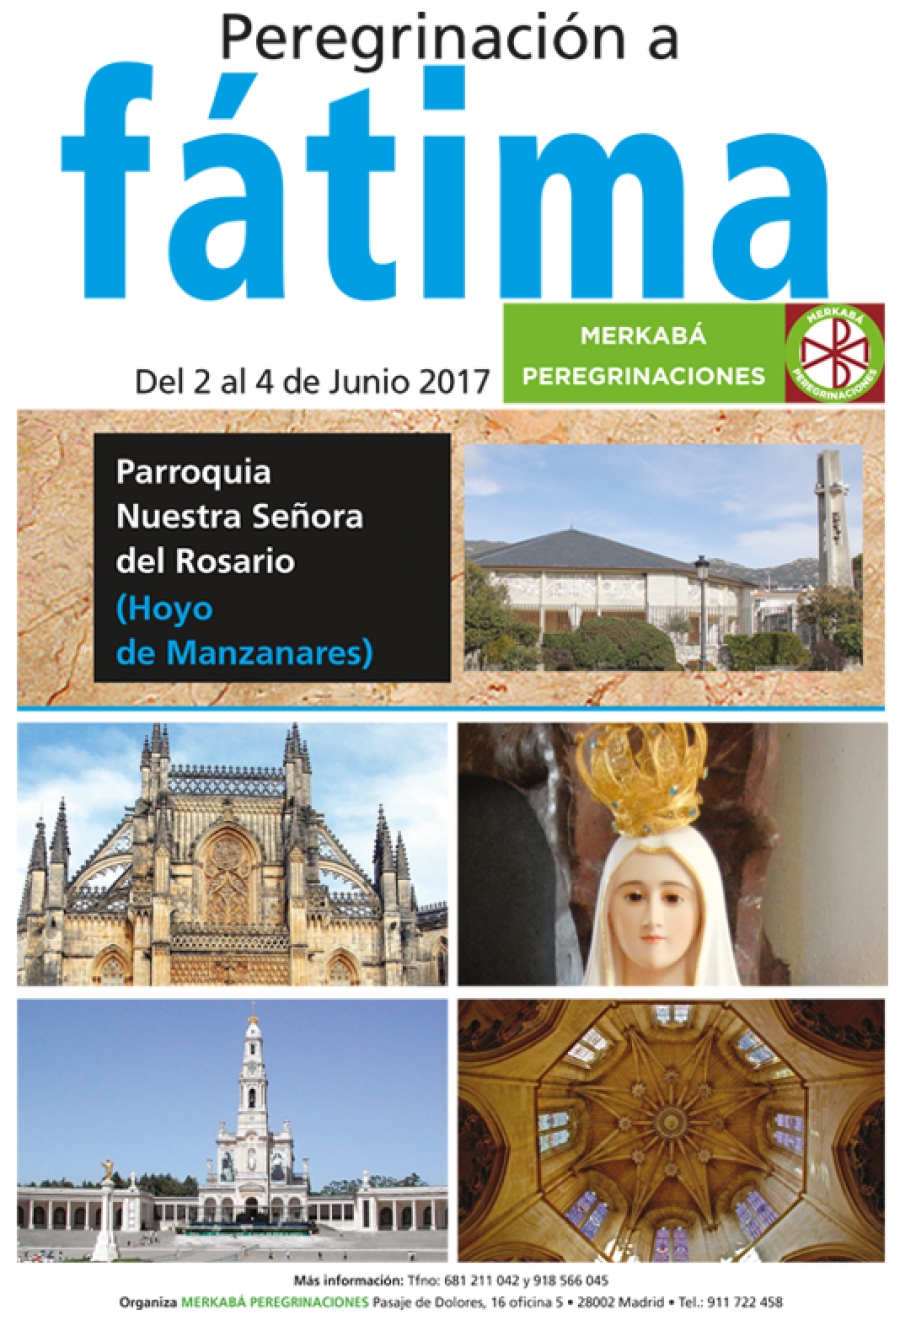 Nuestra Señora del Rosario, de Hoyo de Manzanares, peregrina a Fátima